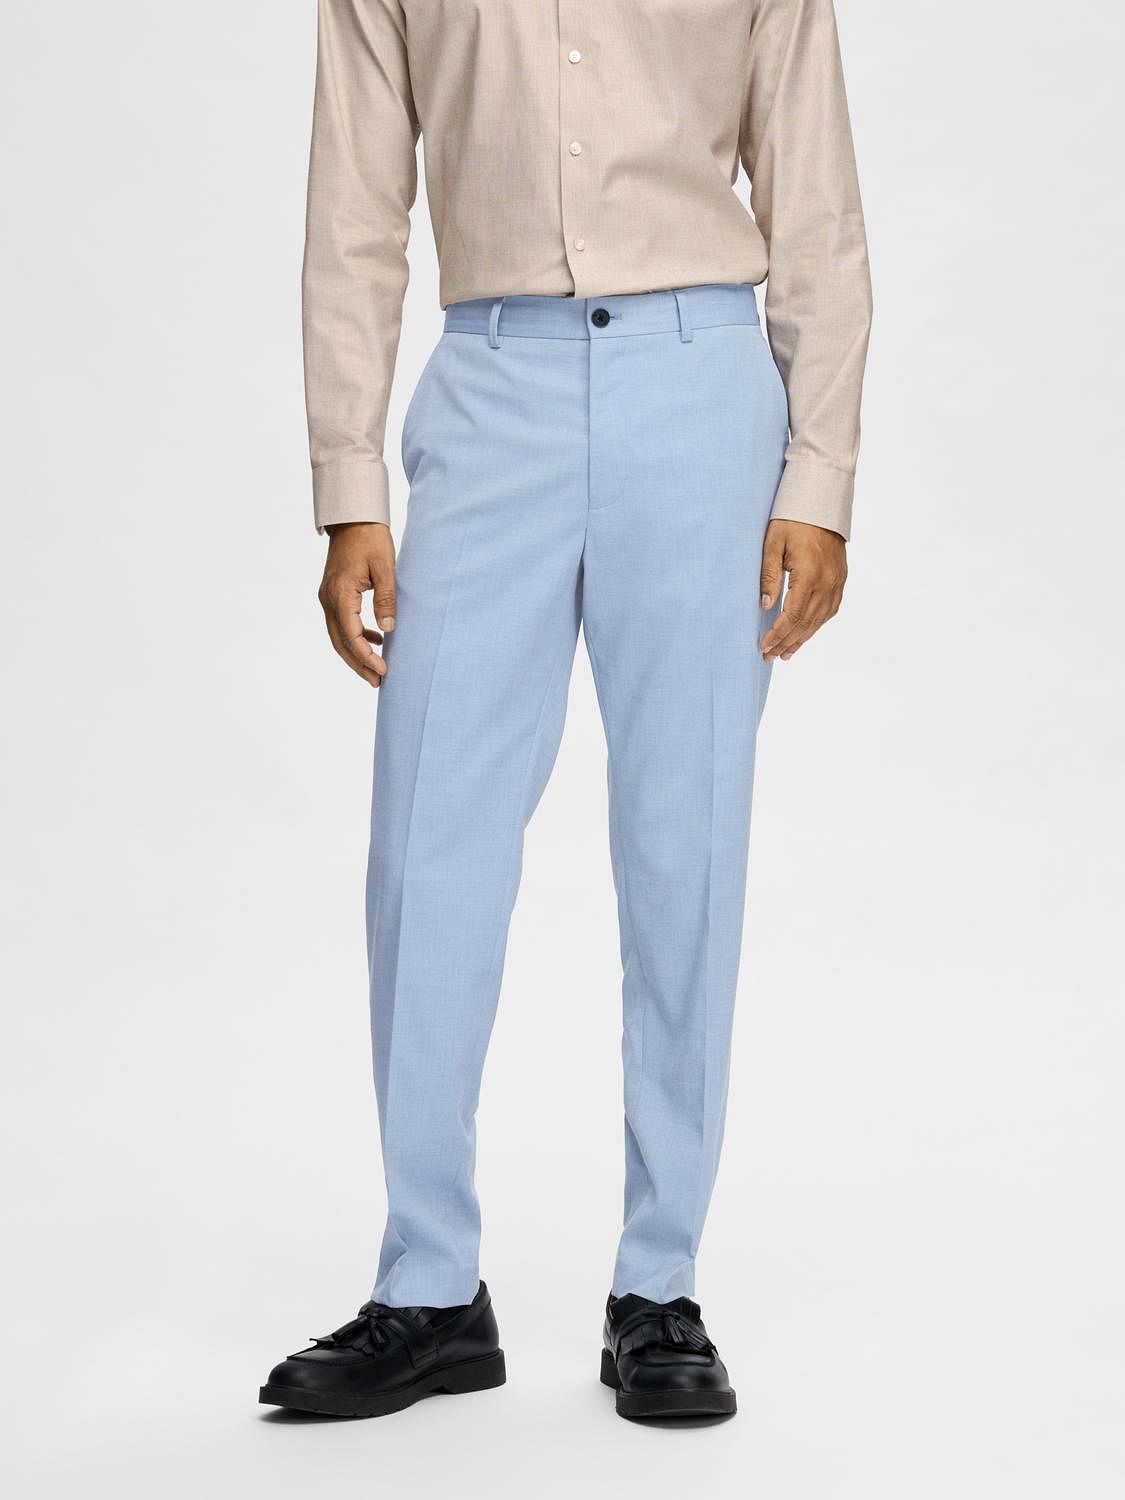 Men's Navy Blue Pants | Levi's® US